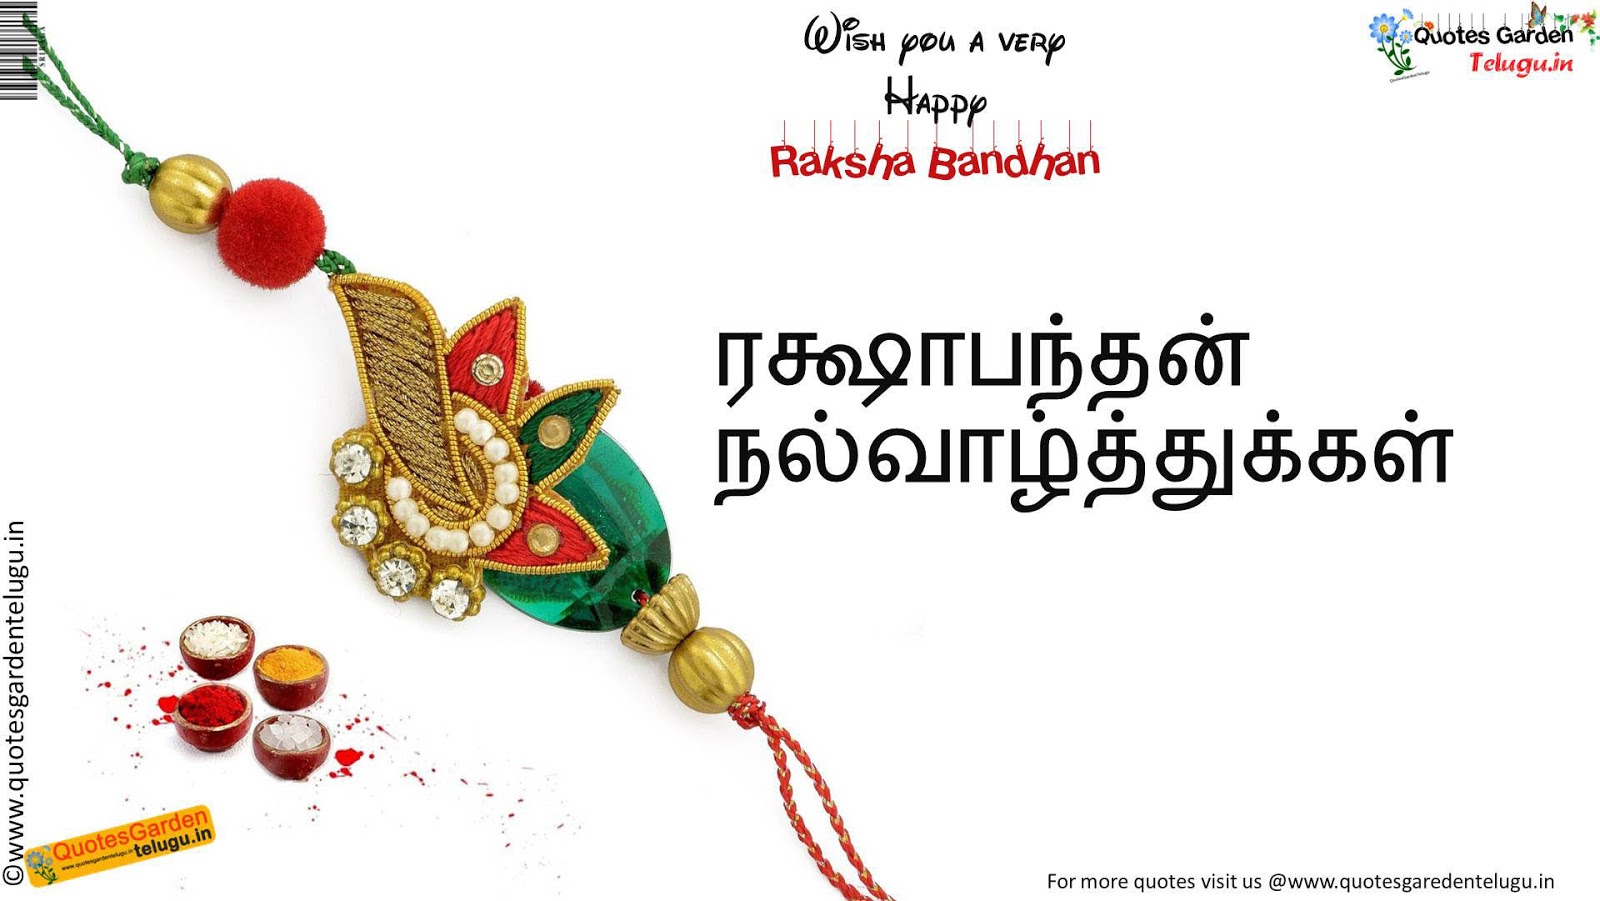 Best Rakshabandhan Greetings HDwallpapers in Tamil kavithai 2020 wishes  free download | QUOTES GARDEN TELUGU | Telugu Quotes | English Quotes |  Hindi Quotes |